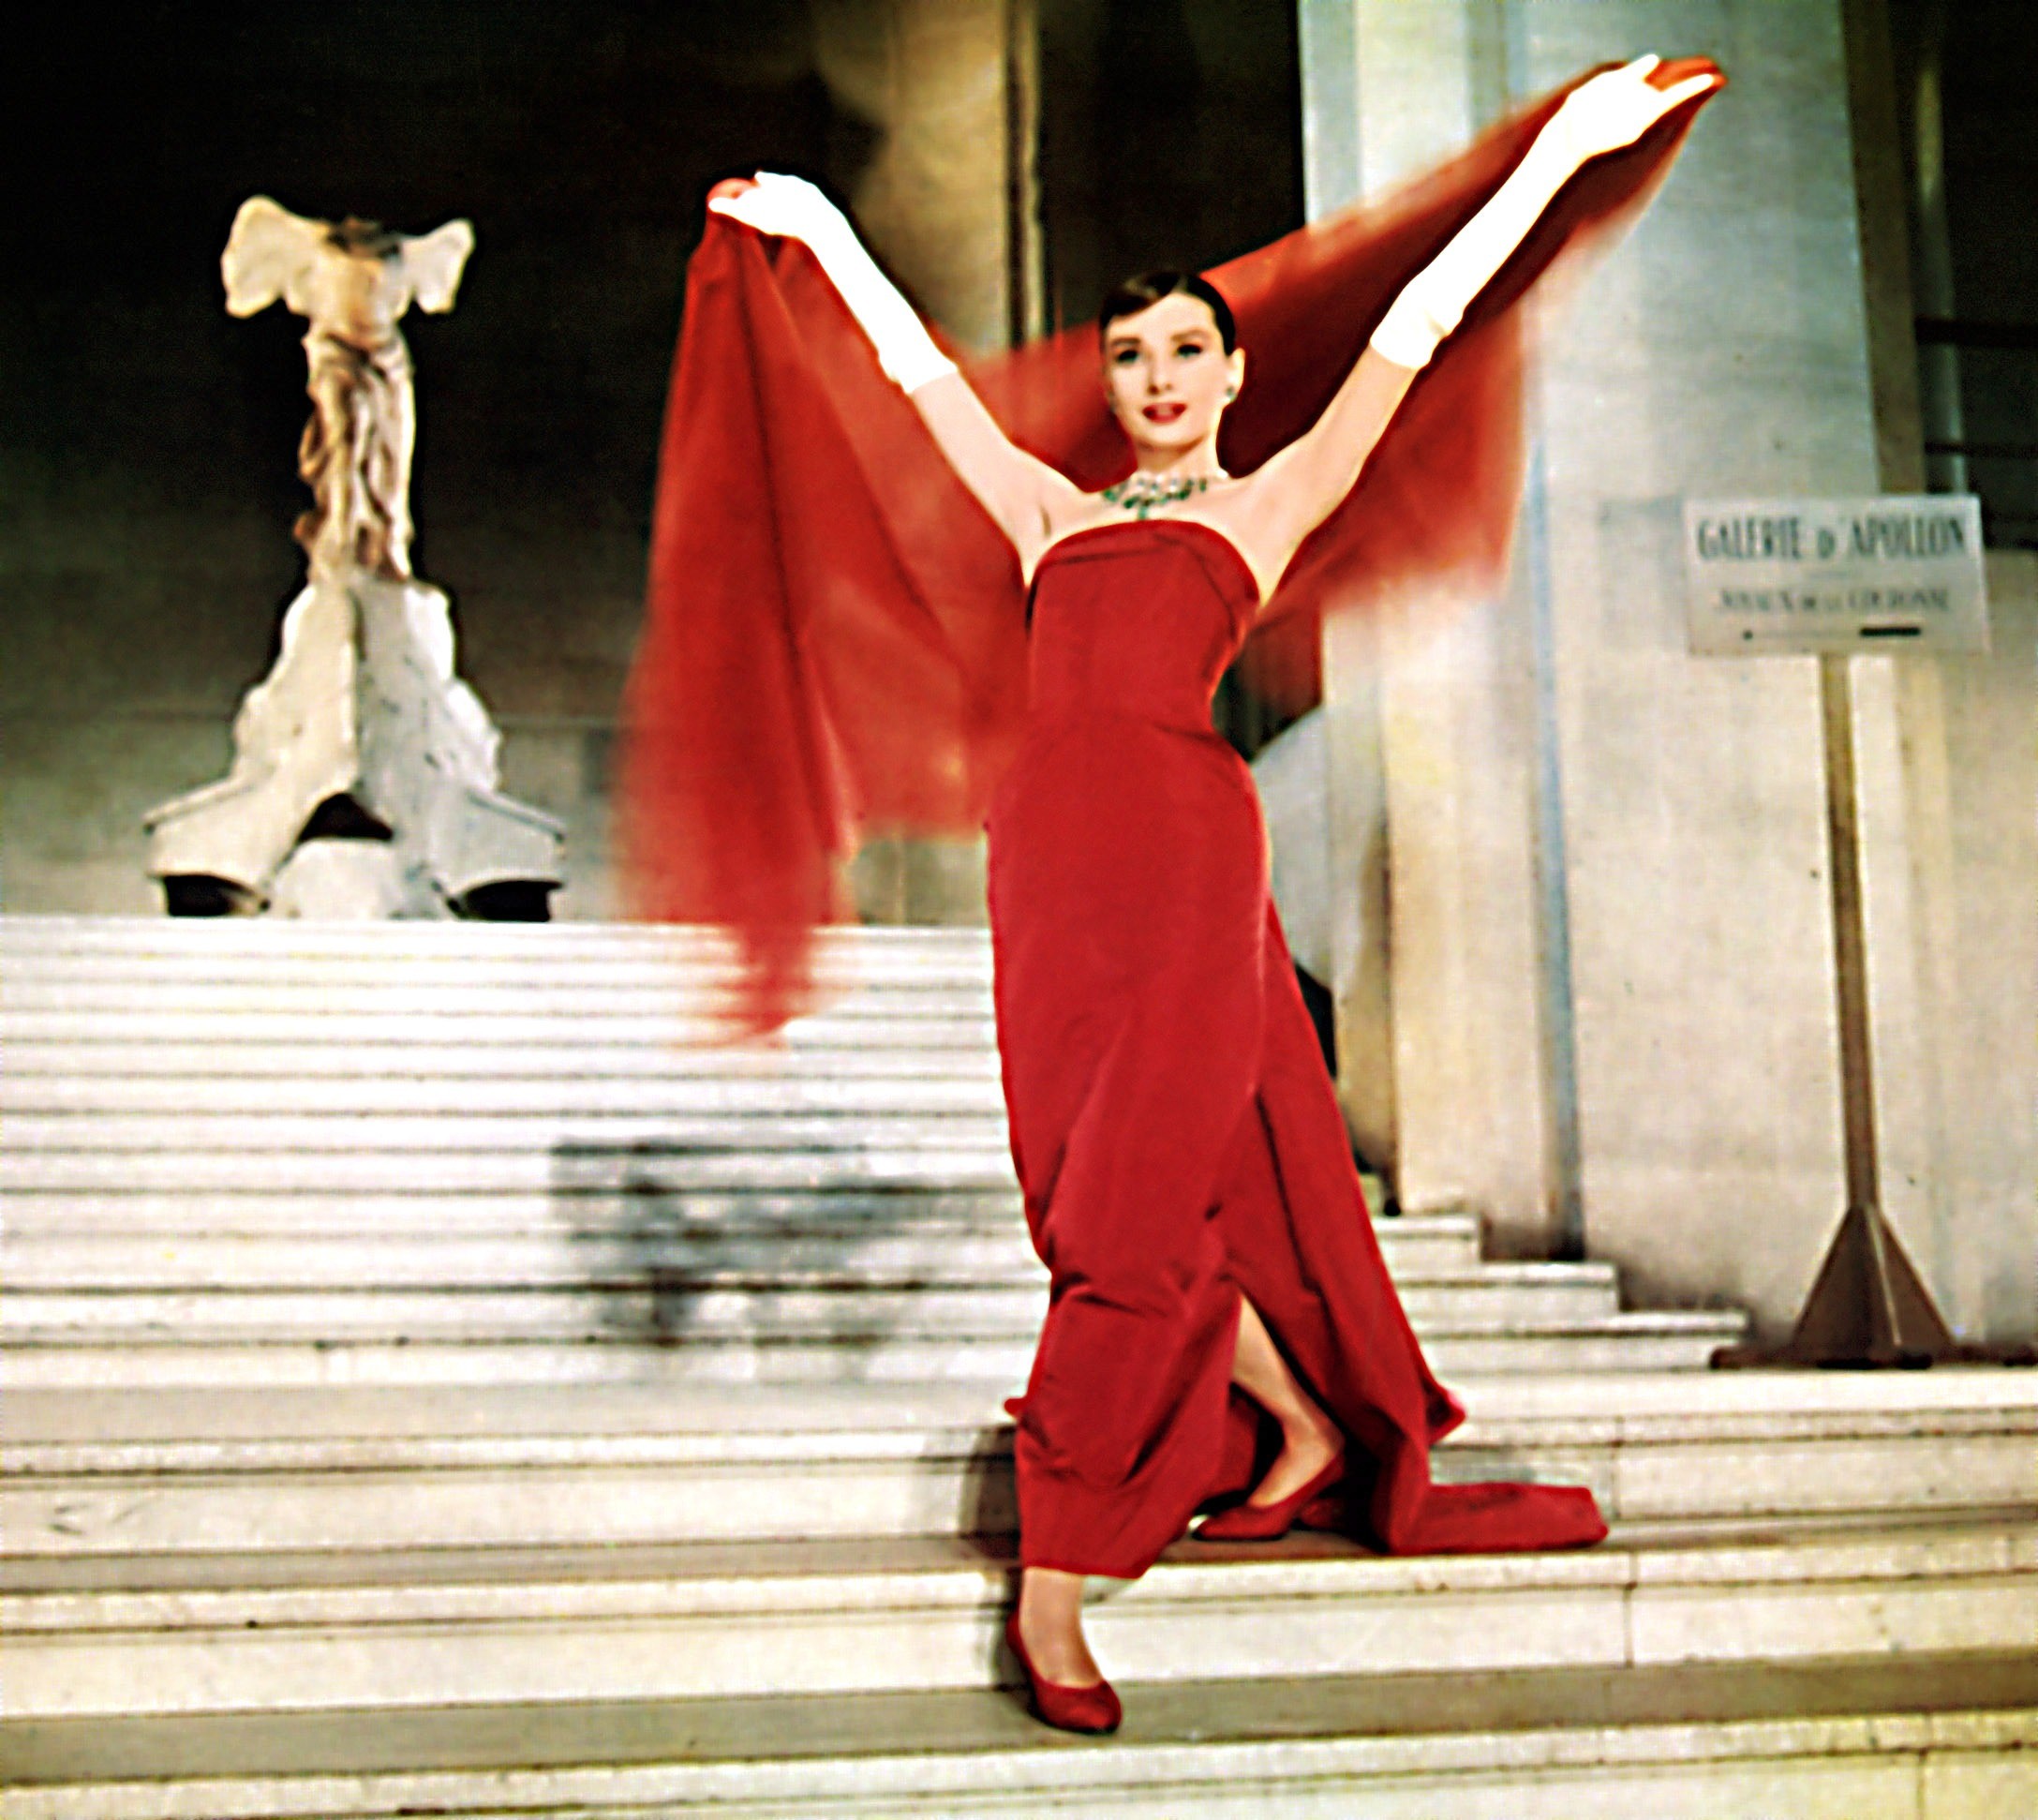 За это красное платье Юбер де Живанши получил номинацию на Оскар в категории «Лучшие костюмы» (но победу не одержал). В нем Одри Хепберн появилась в фильме «Забавная мордашка» (1957), одн...